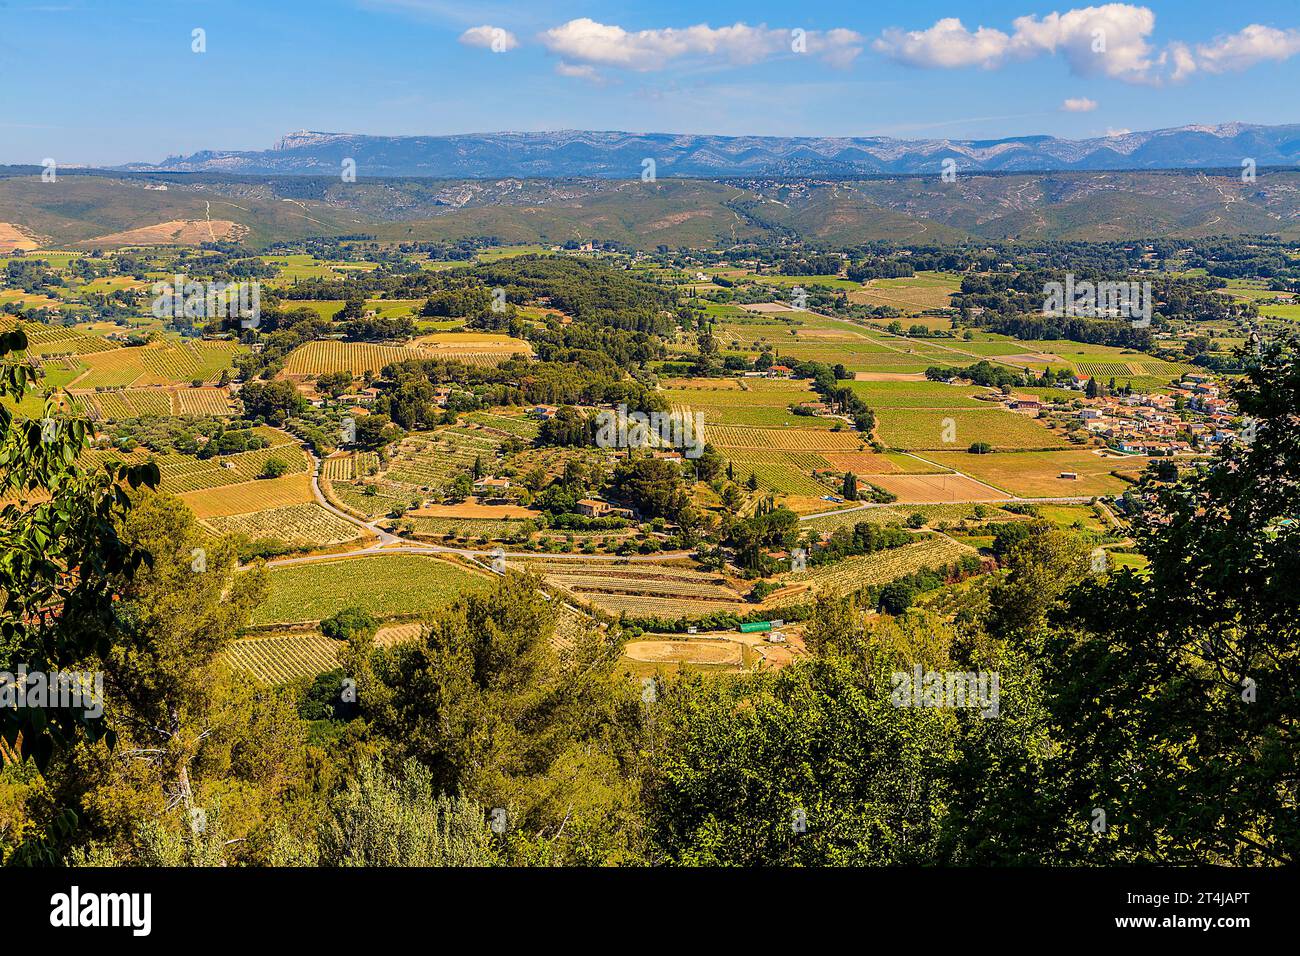 Ein malerischer Blick auf eine wunderschöne Gegend von Le Castellet in Frankreich. Stockfoto